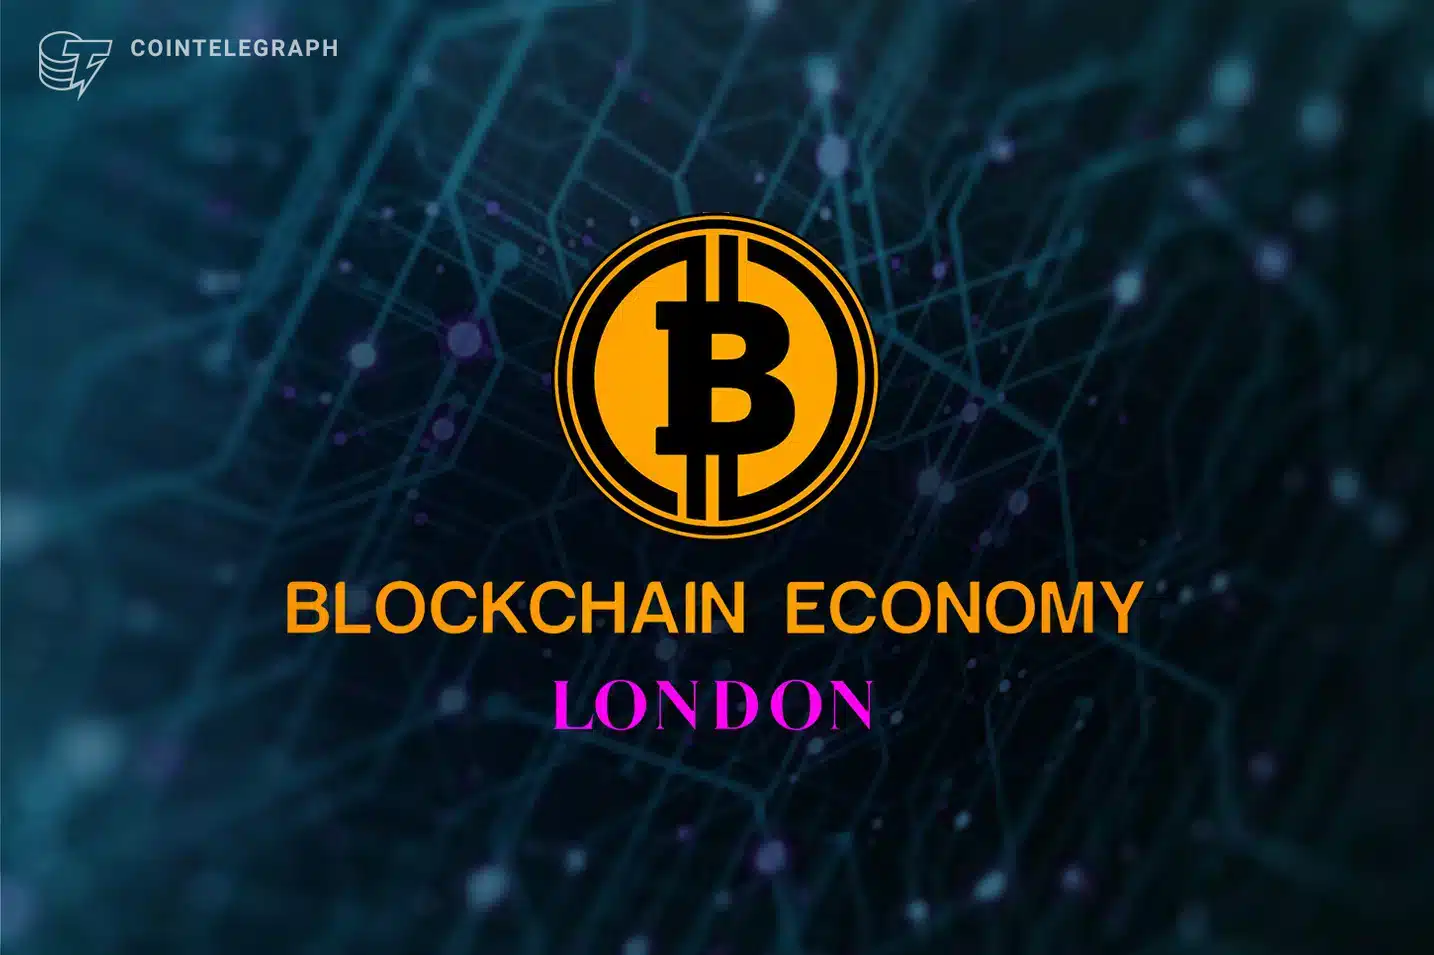 Inscrição Bitcoin Londres